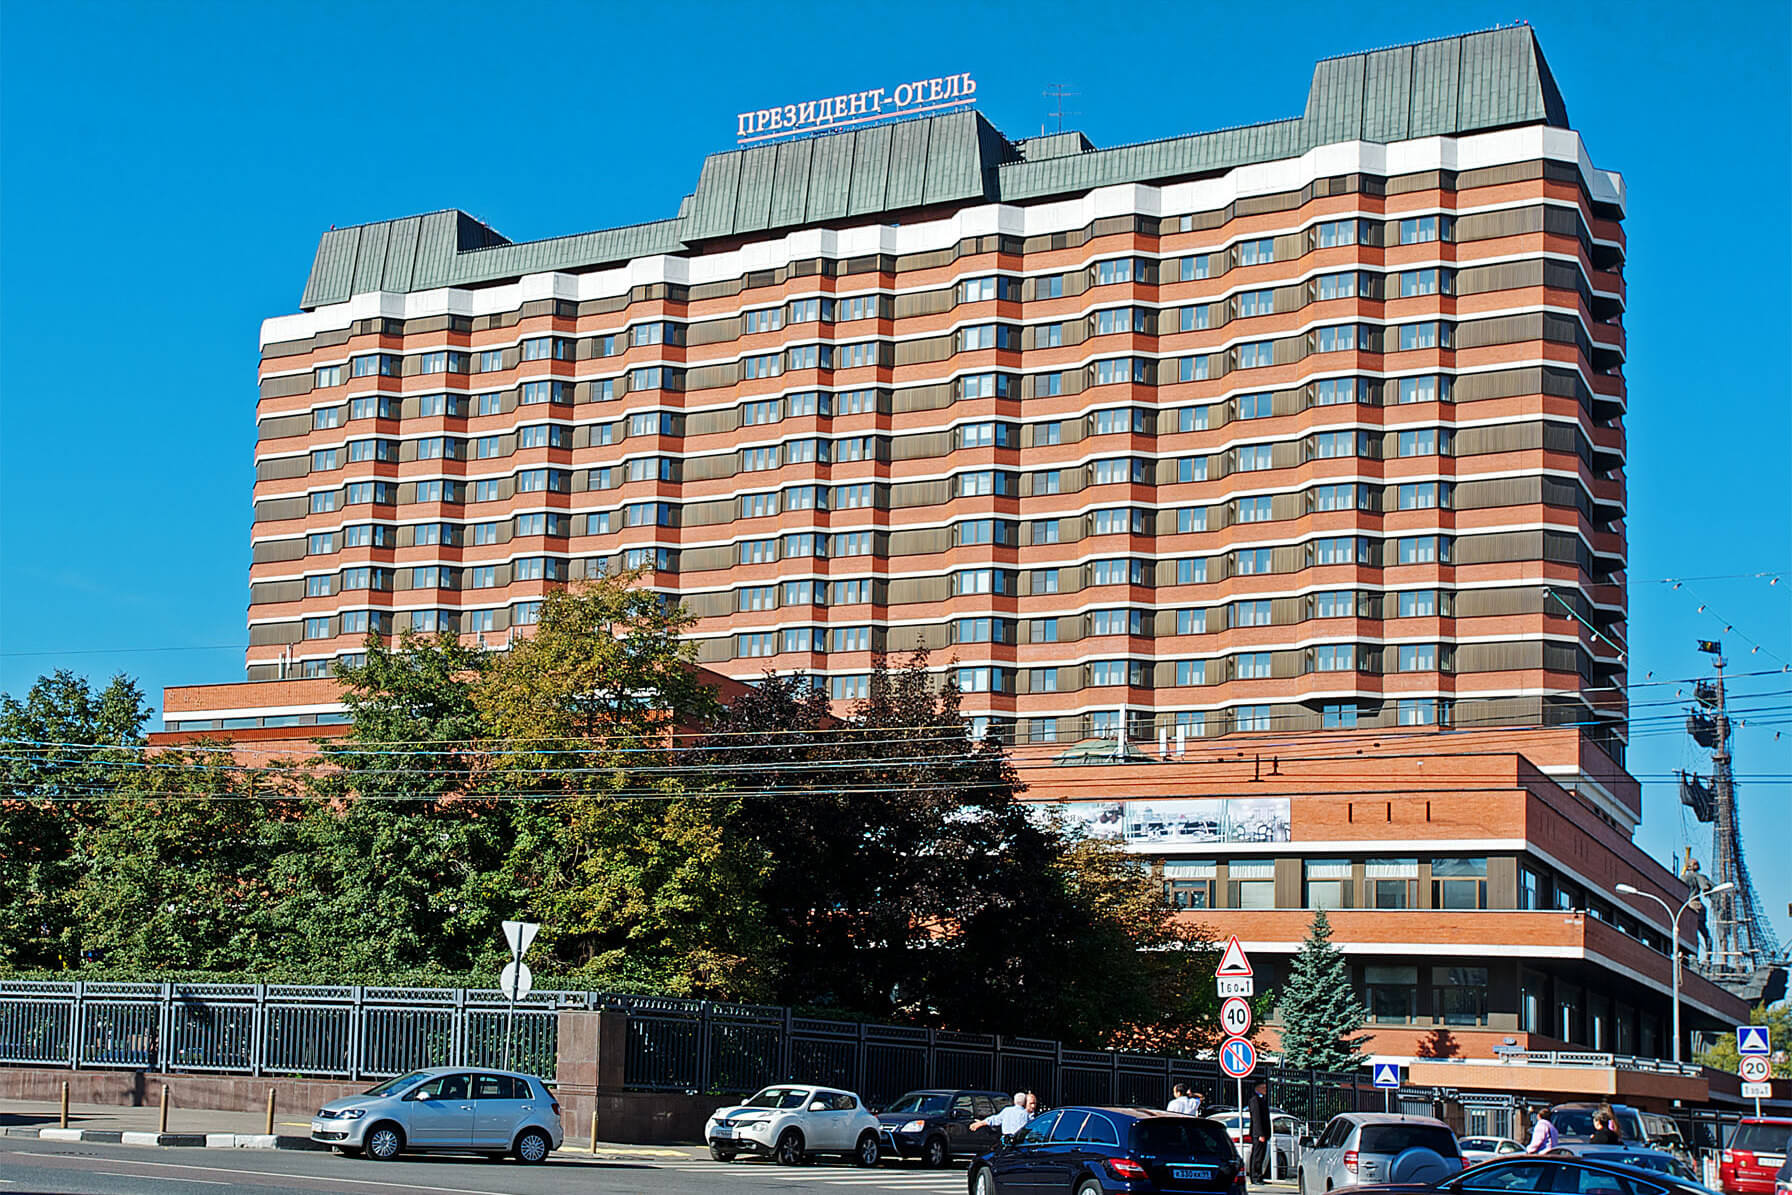 Здание отеля - многоэтажный гостиничный комплекс.